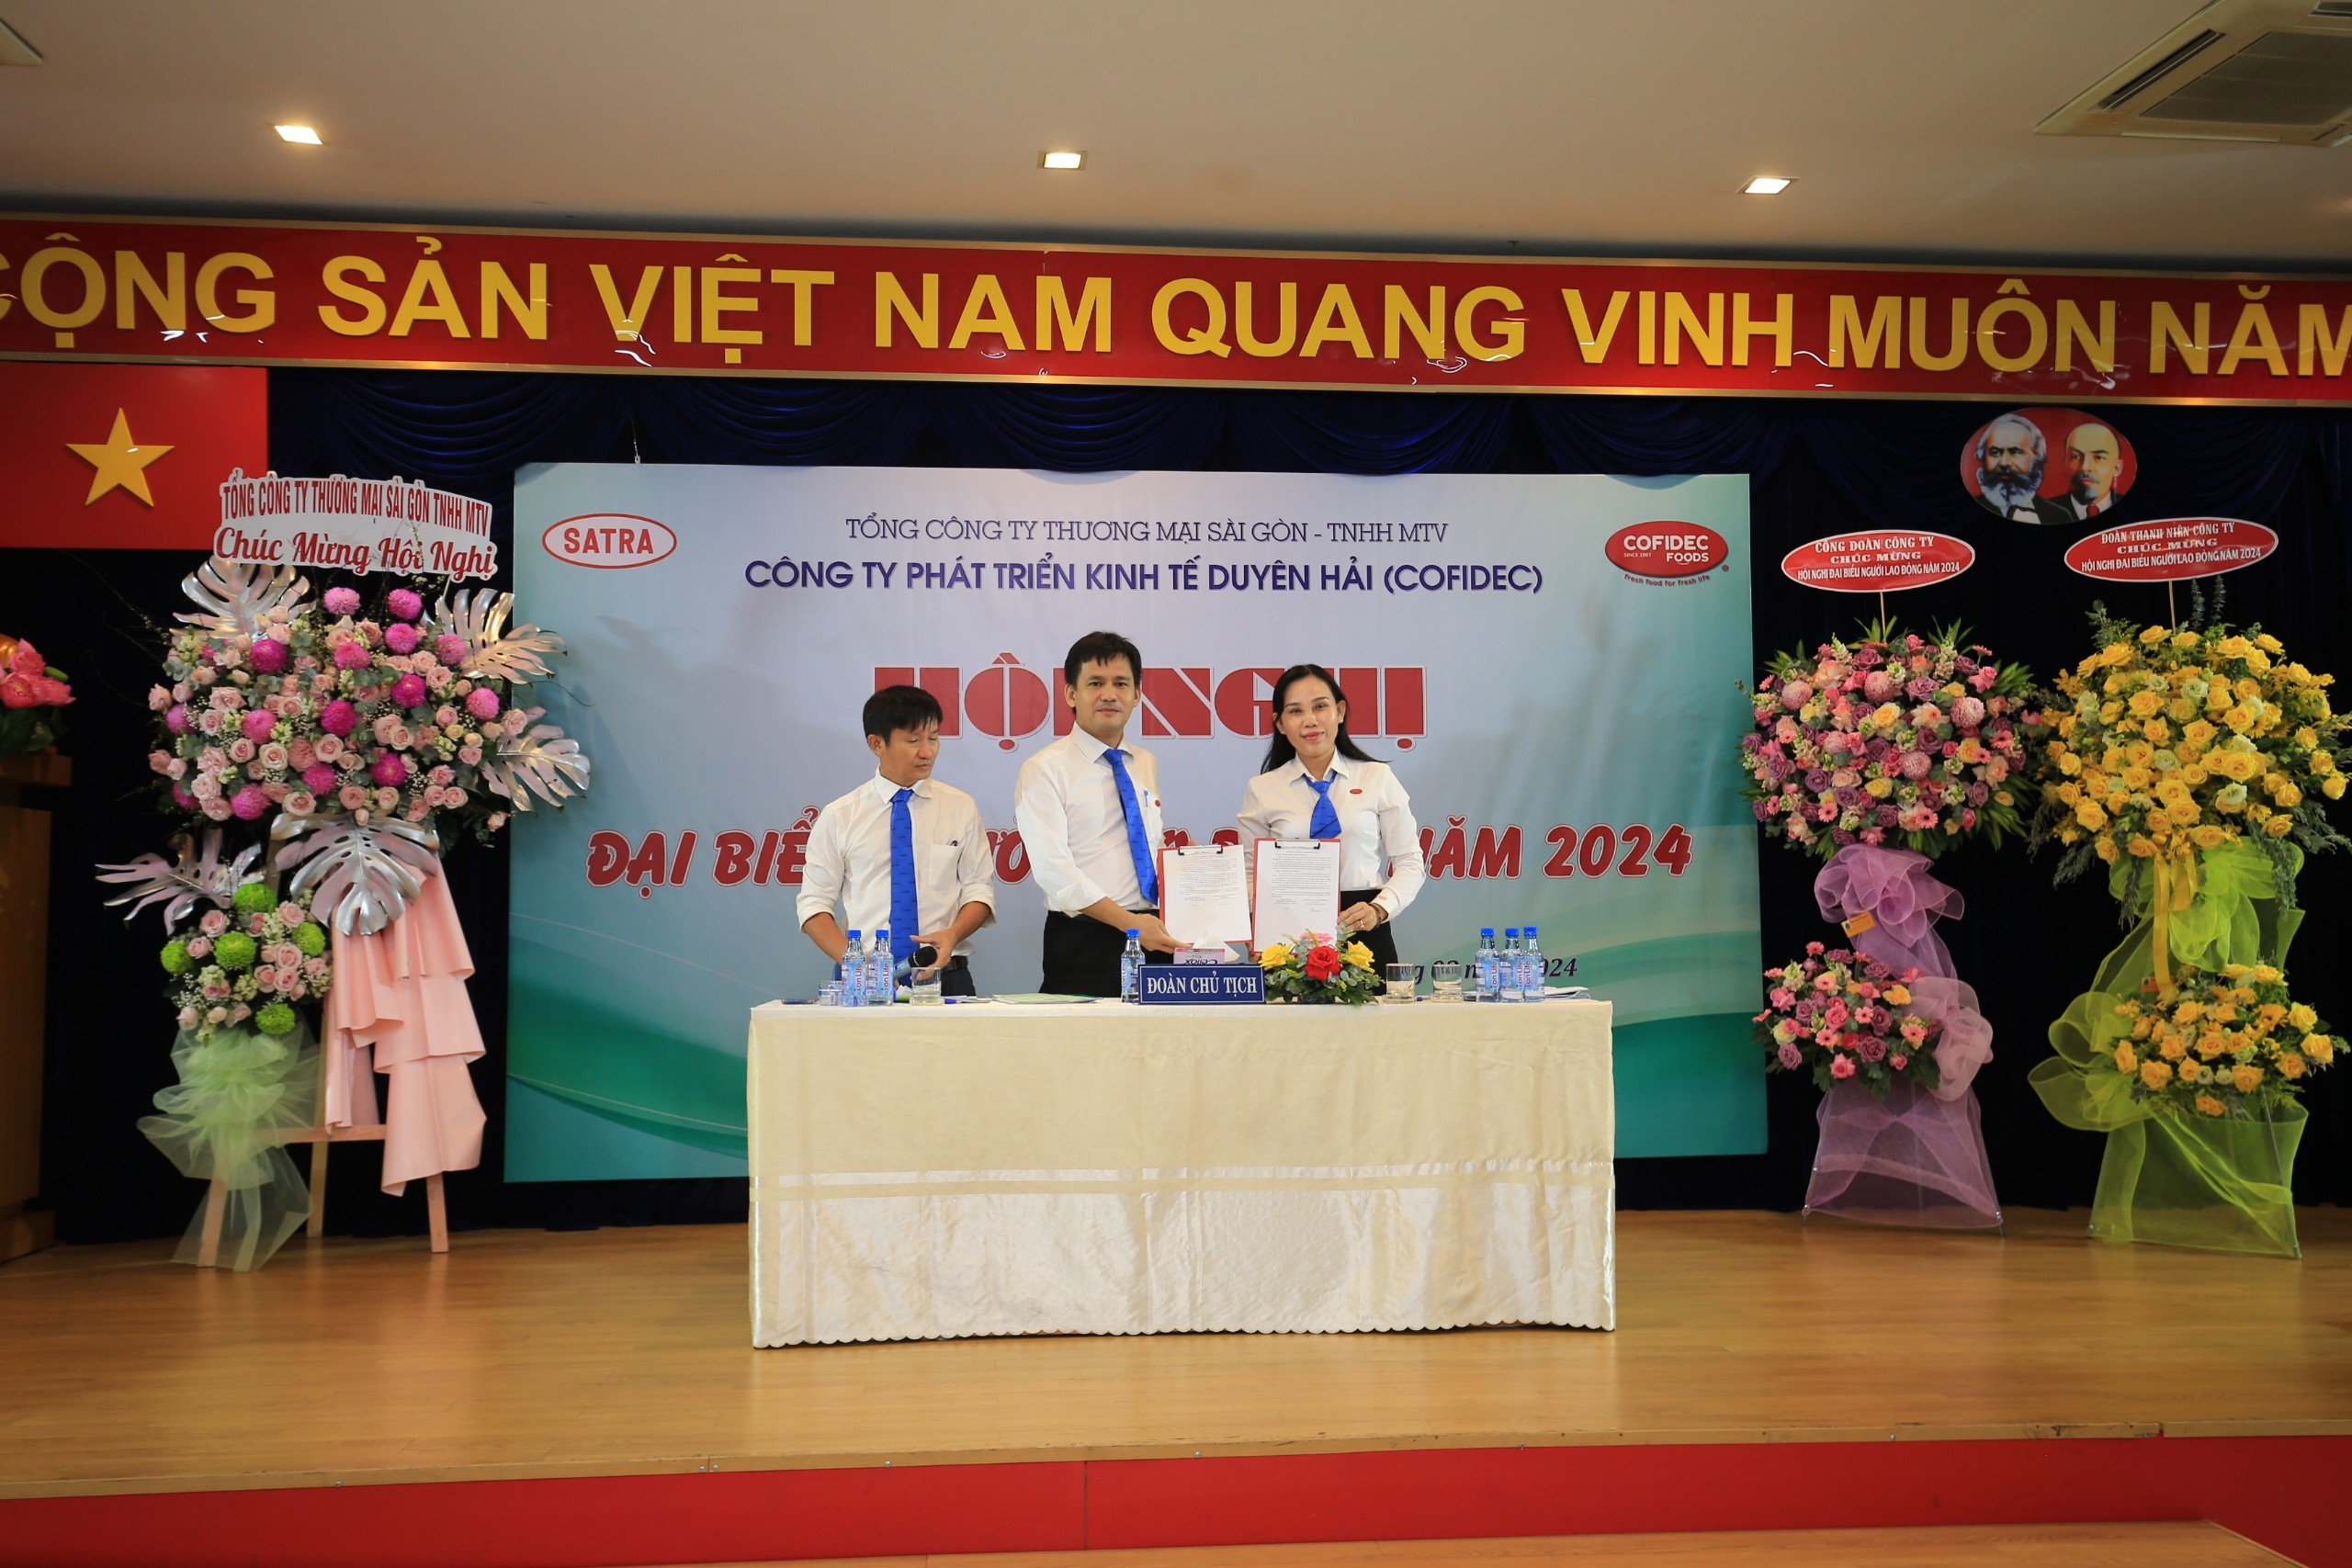 Đ/c Đoàn Văn Nam và đ/c Nguyễn Thị Lệ Thy ký kết thỏa ước lao động tập thể năm 2024.